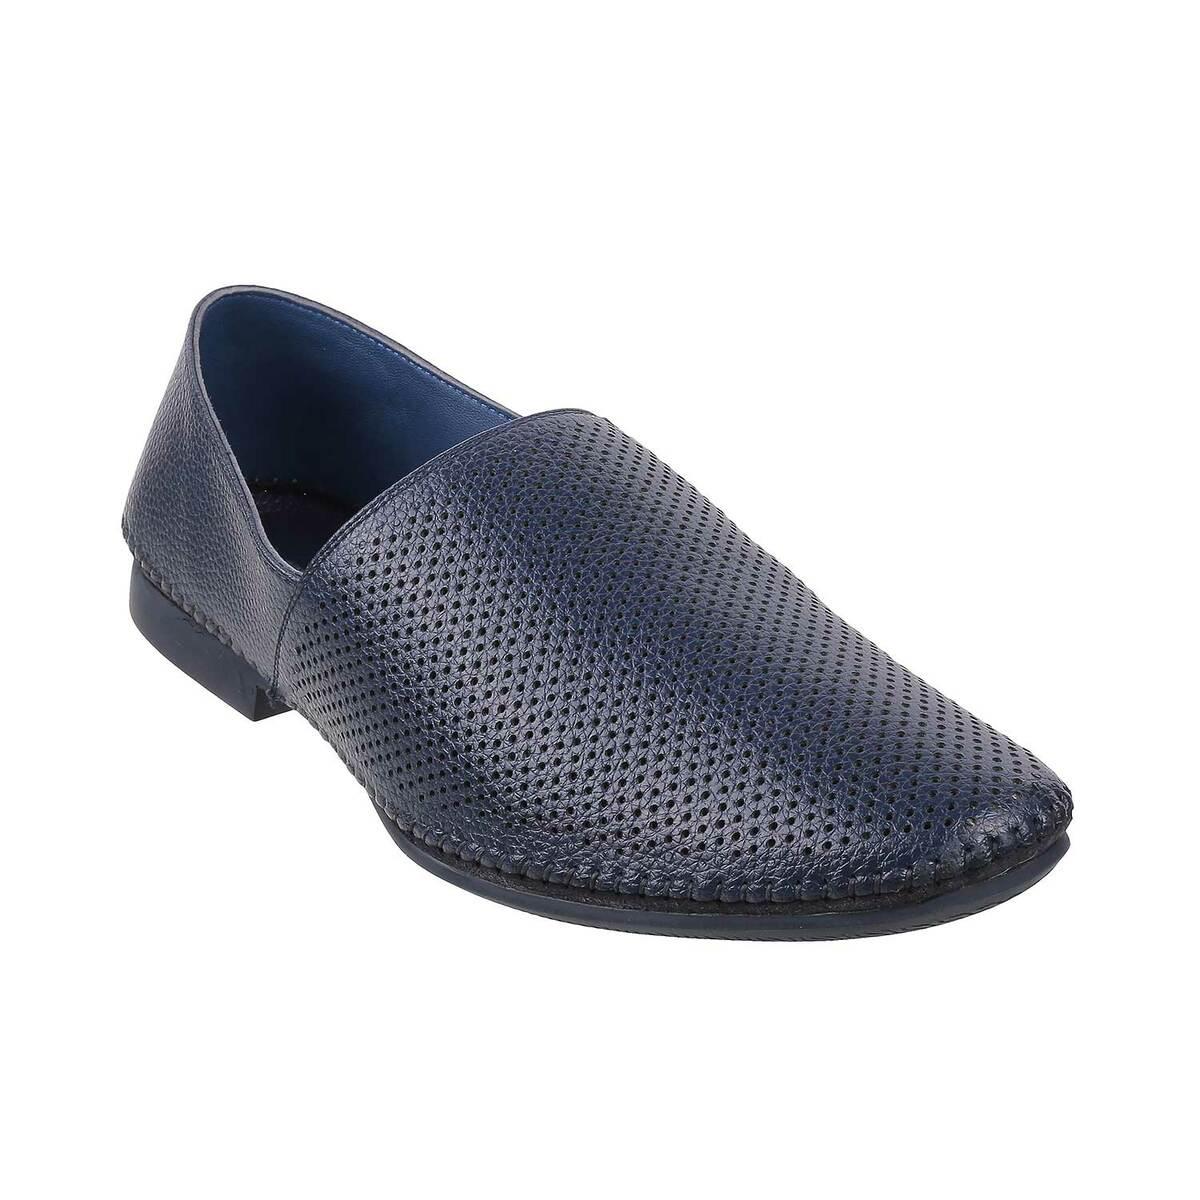 Buy Men Maroon Ethnic Jutis Online | SKU: 18-981-44-40-Metro Shoes